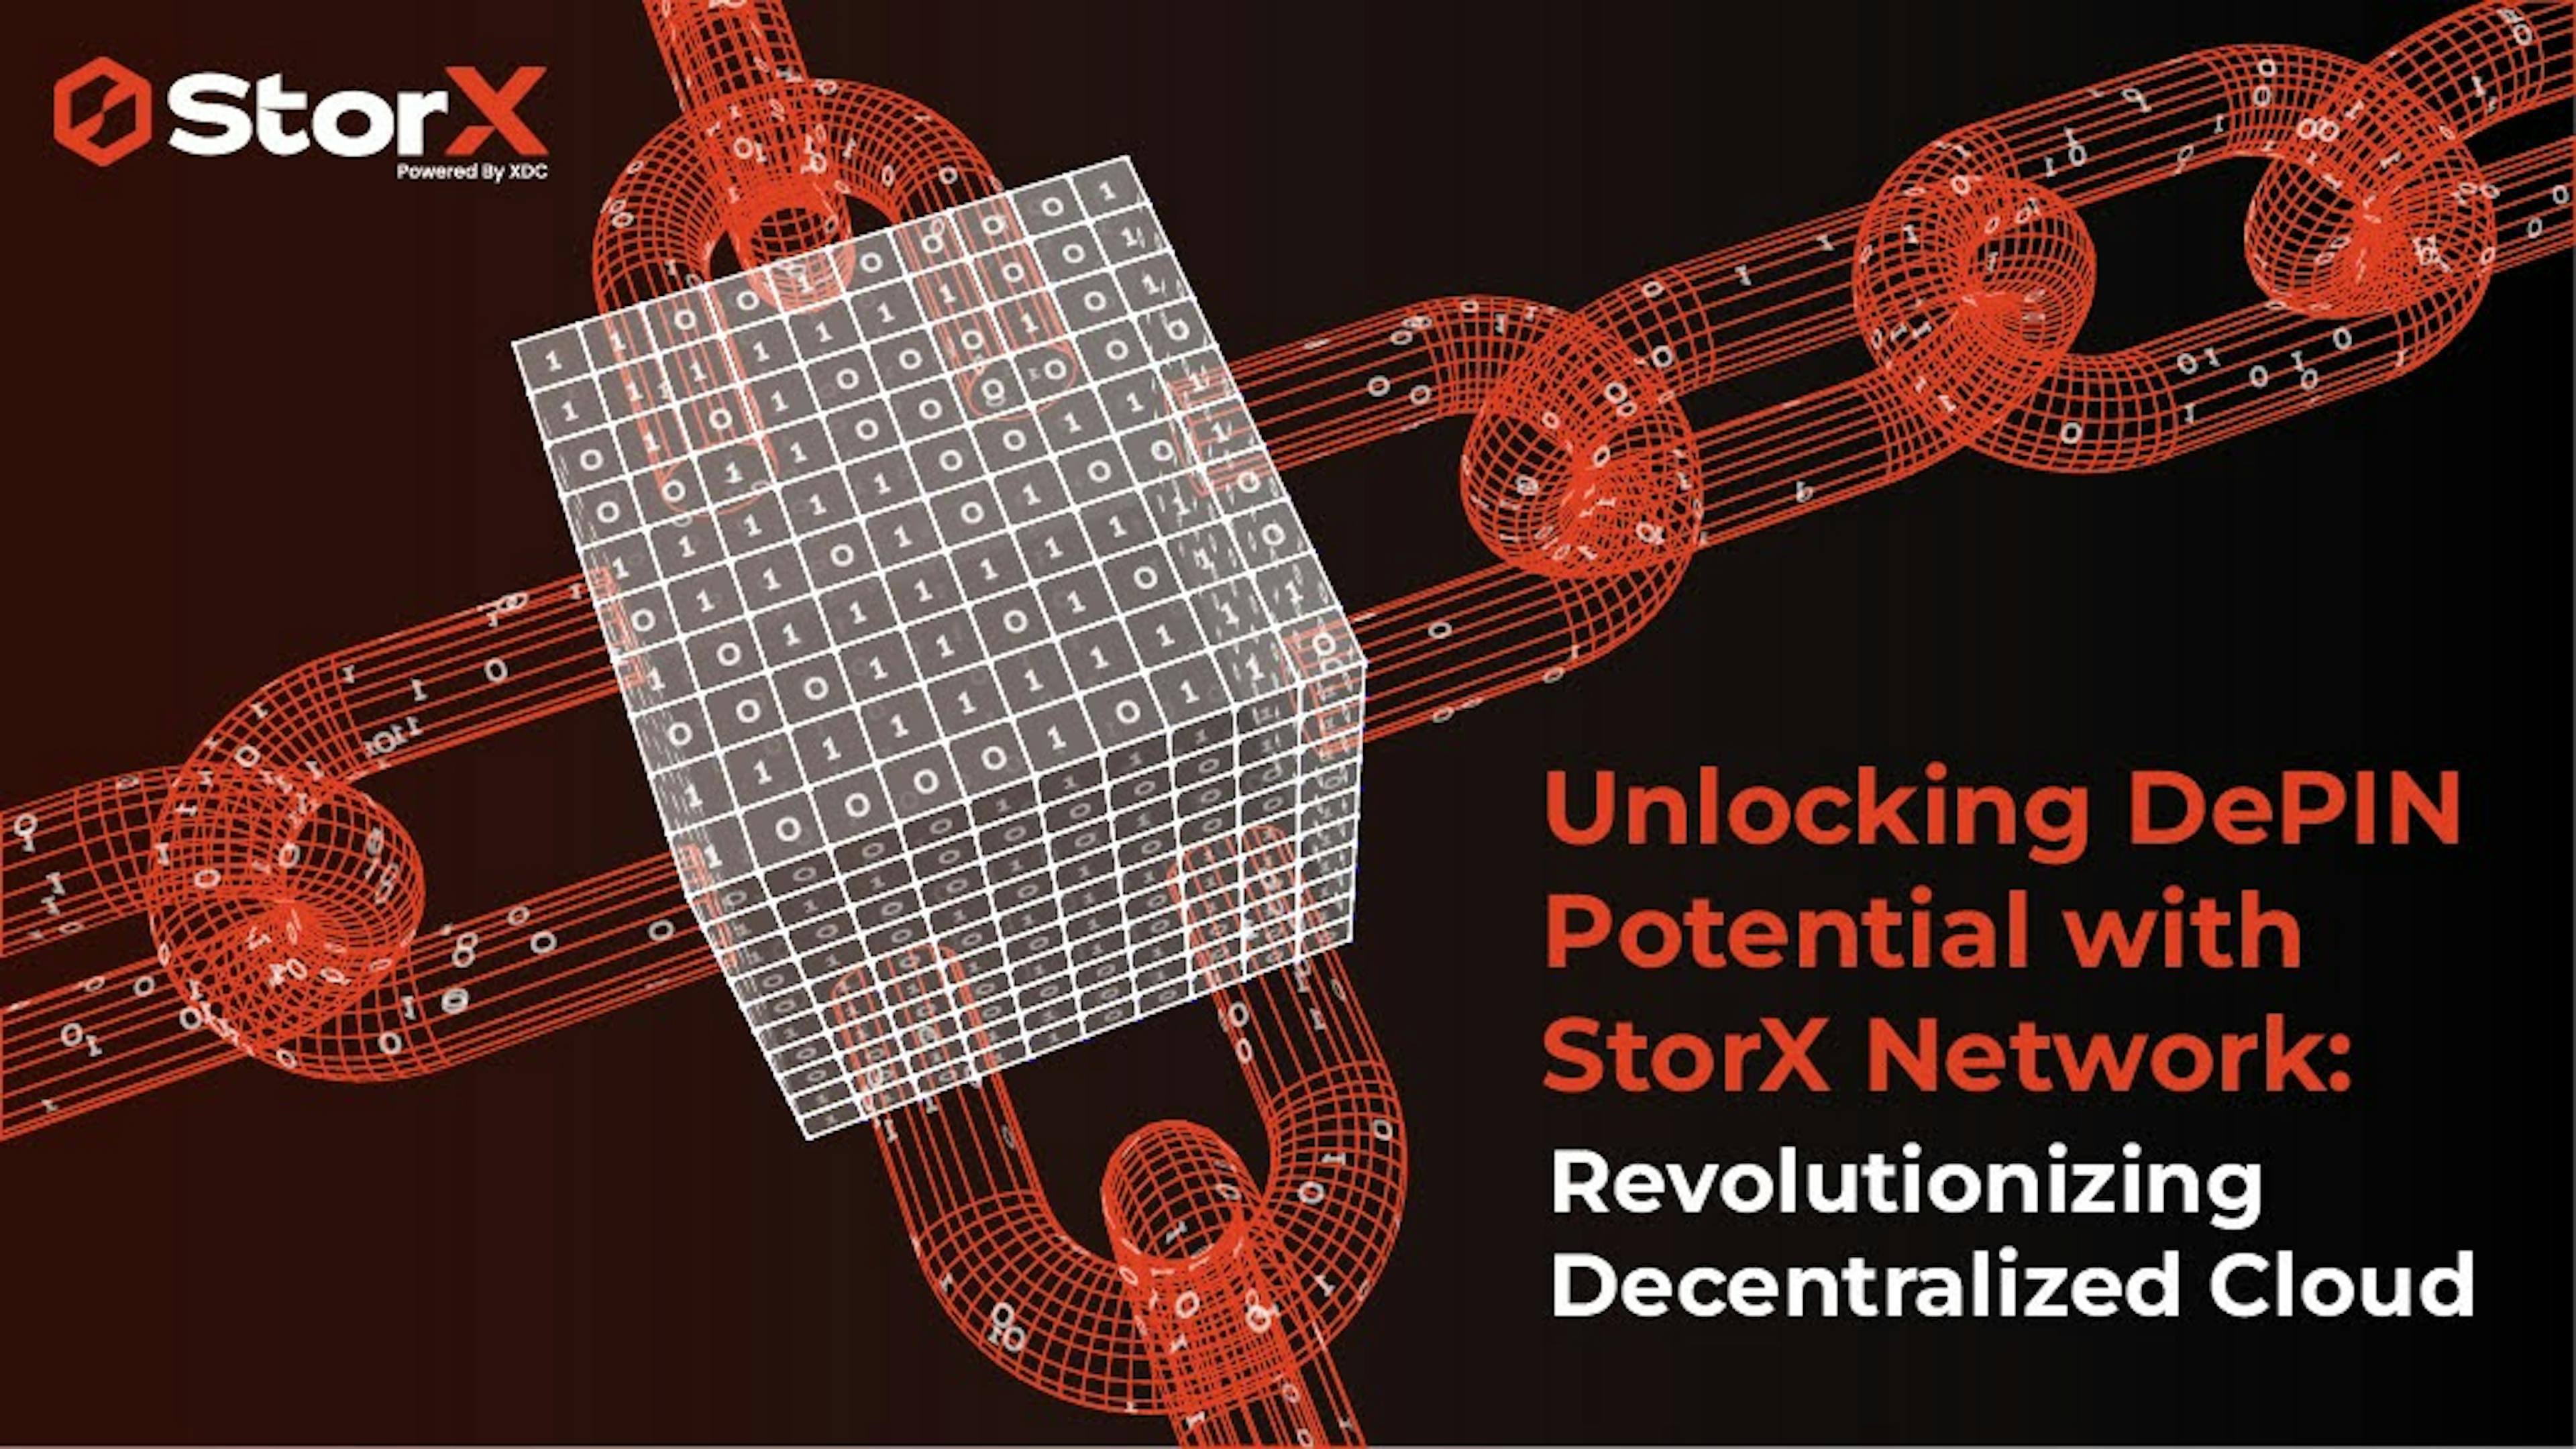 featured image - Libérer le potentiel de DePIN avec StorX Network : révolutionner le cloud décentralisé